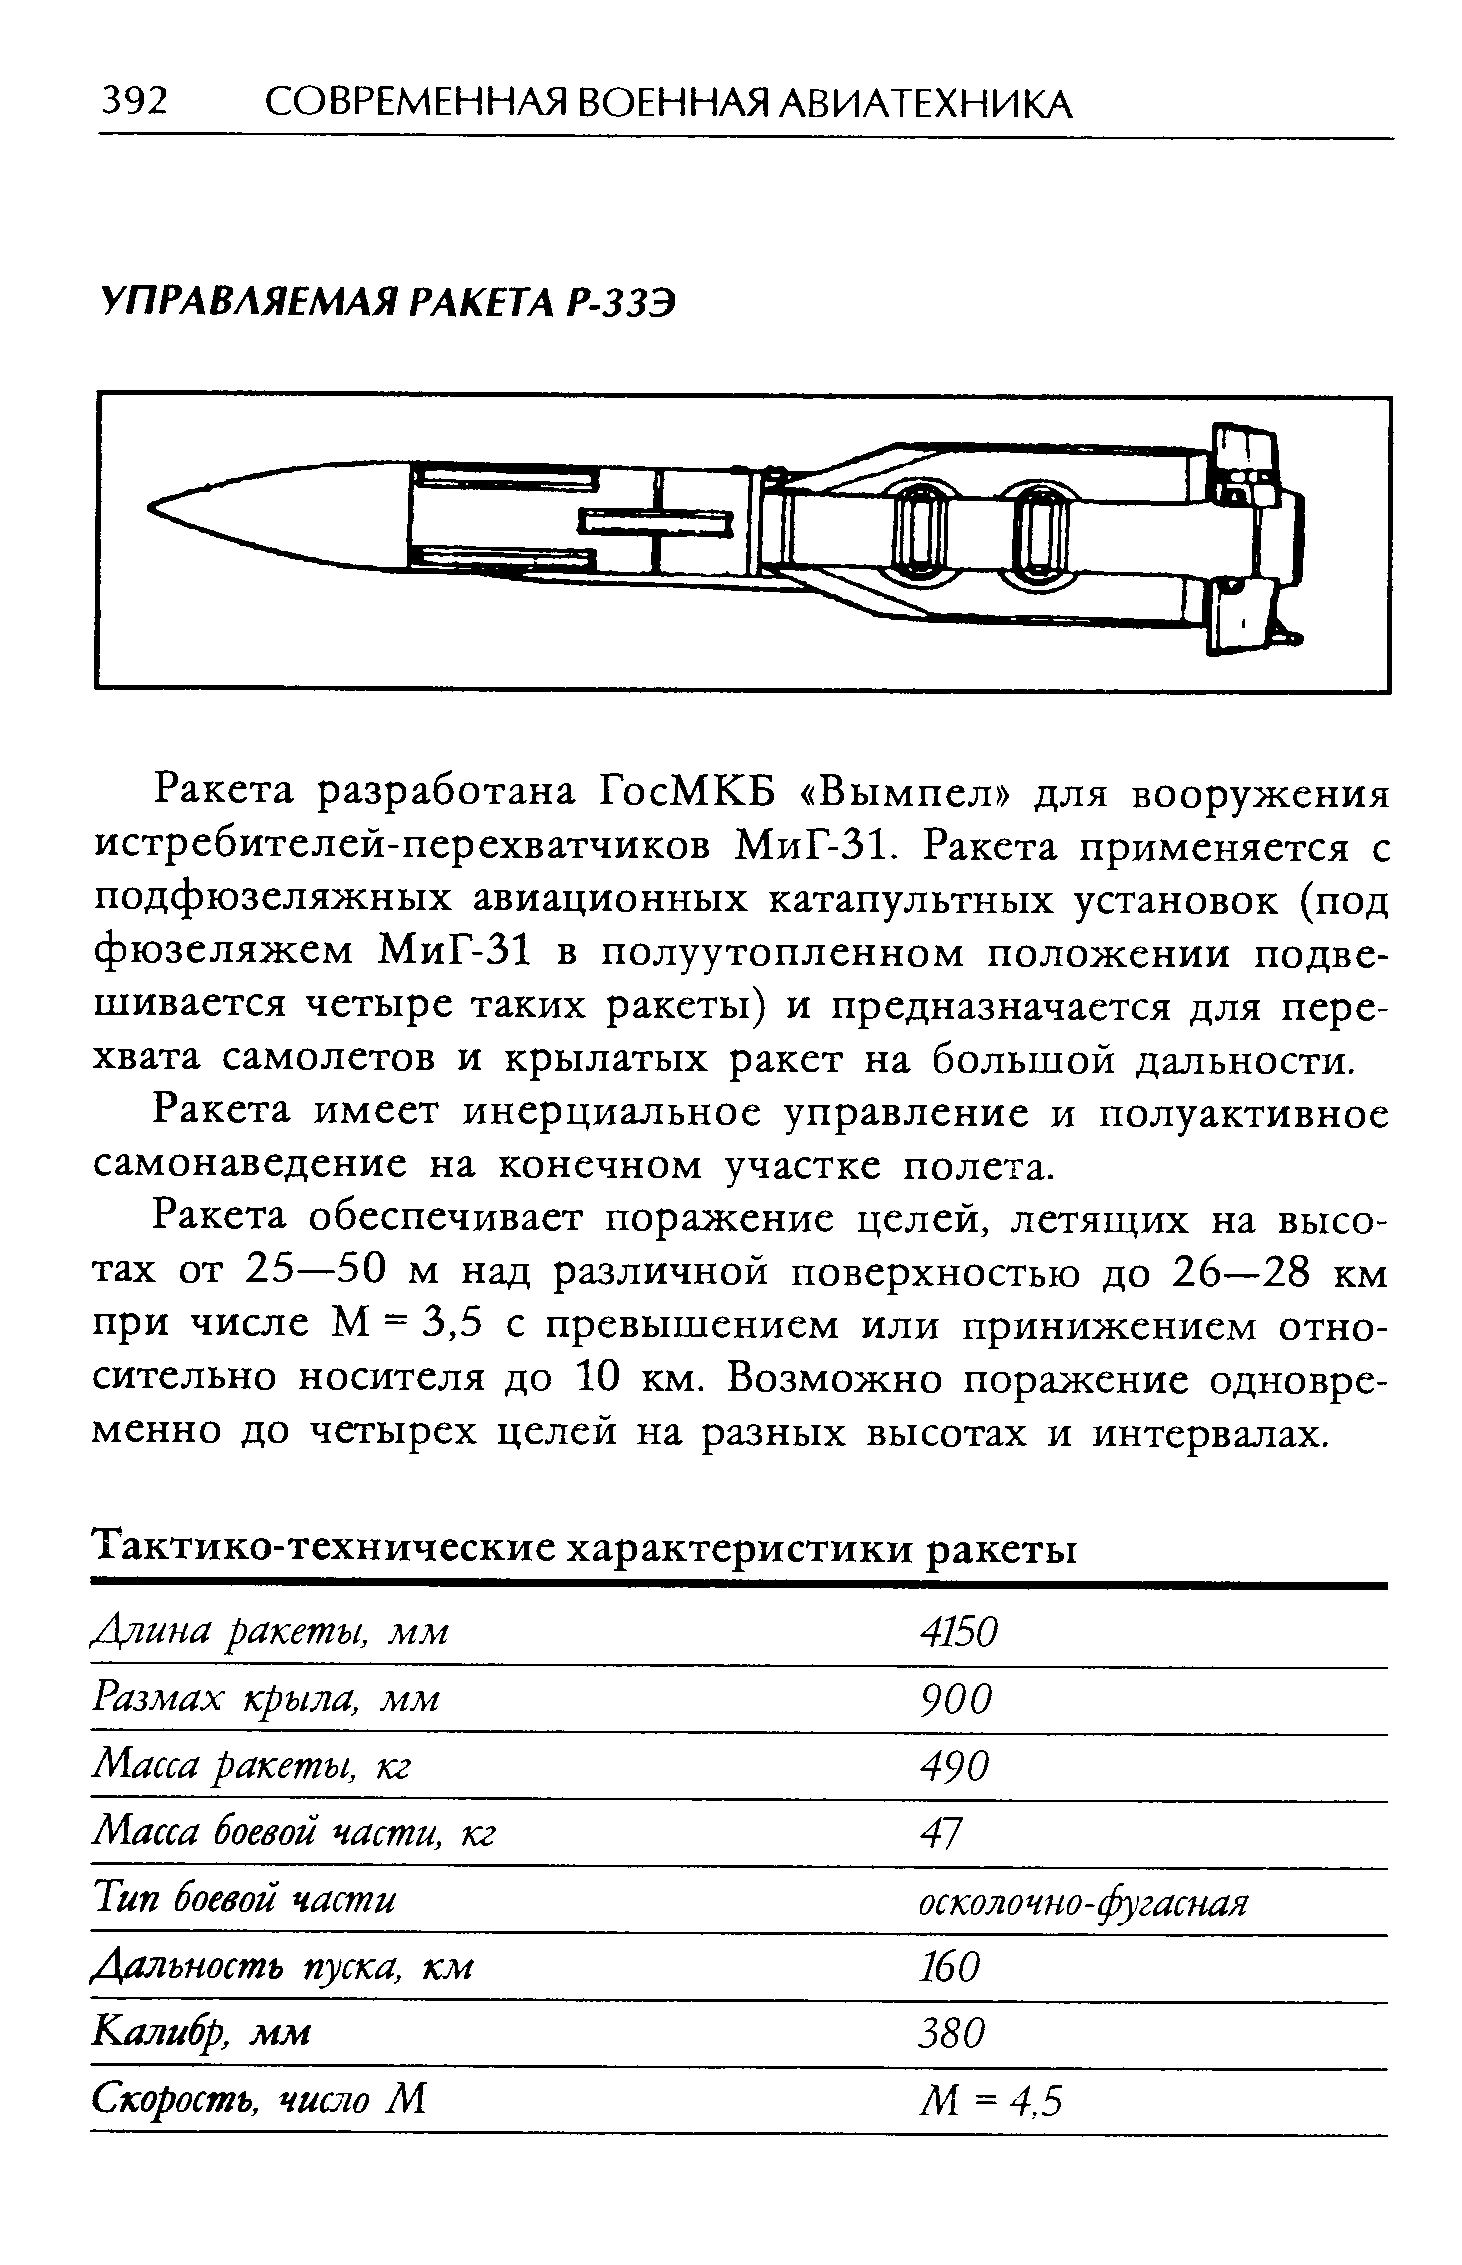 Ракета разработана ГосМКБ Вымпел для вооружения истребителей-перехватчиков МиГ-31. Ракета применяется с подфюзеляжных авиационных катапультных установок (под фюзеляжем МиГ-31 в полуутопленном положении подвешивается четыре таких ракеты) и предназначается для перехвата самолетов и крылатых ракет на большой дальности.
